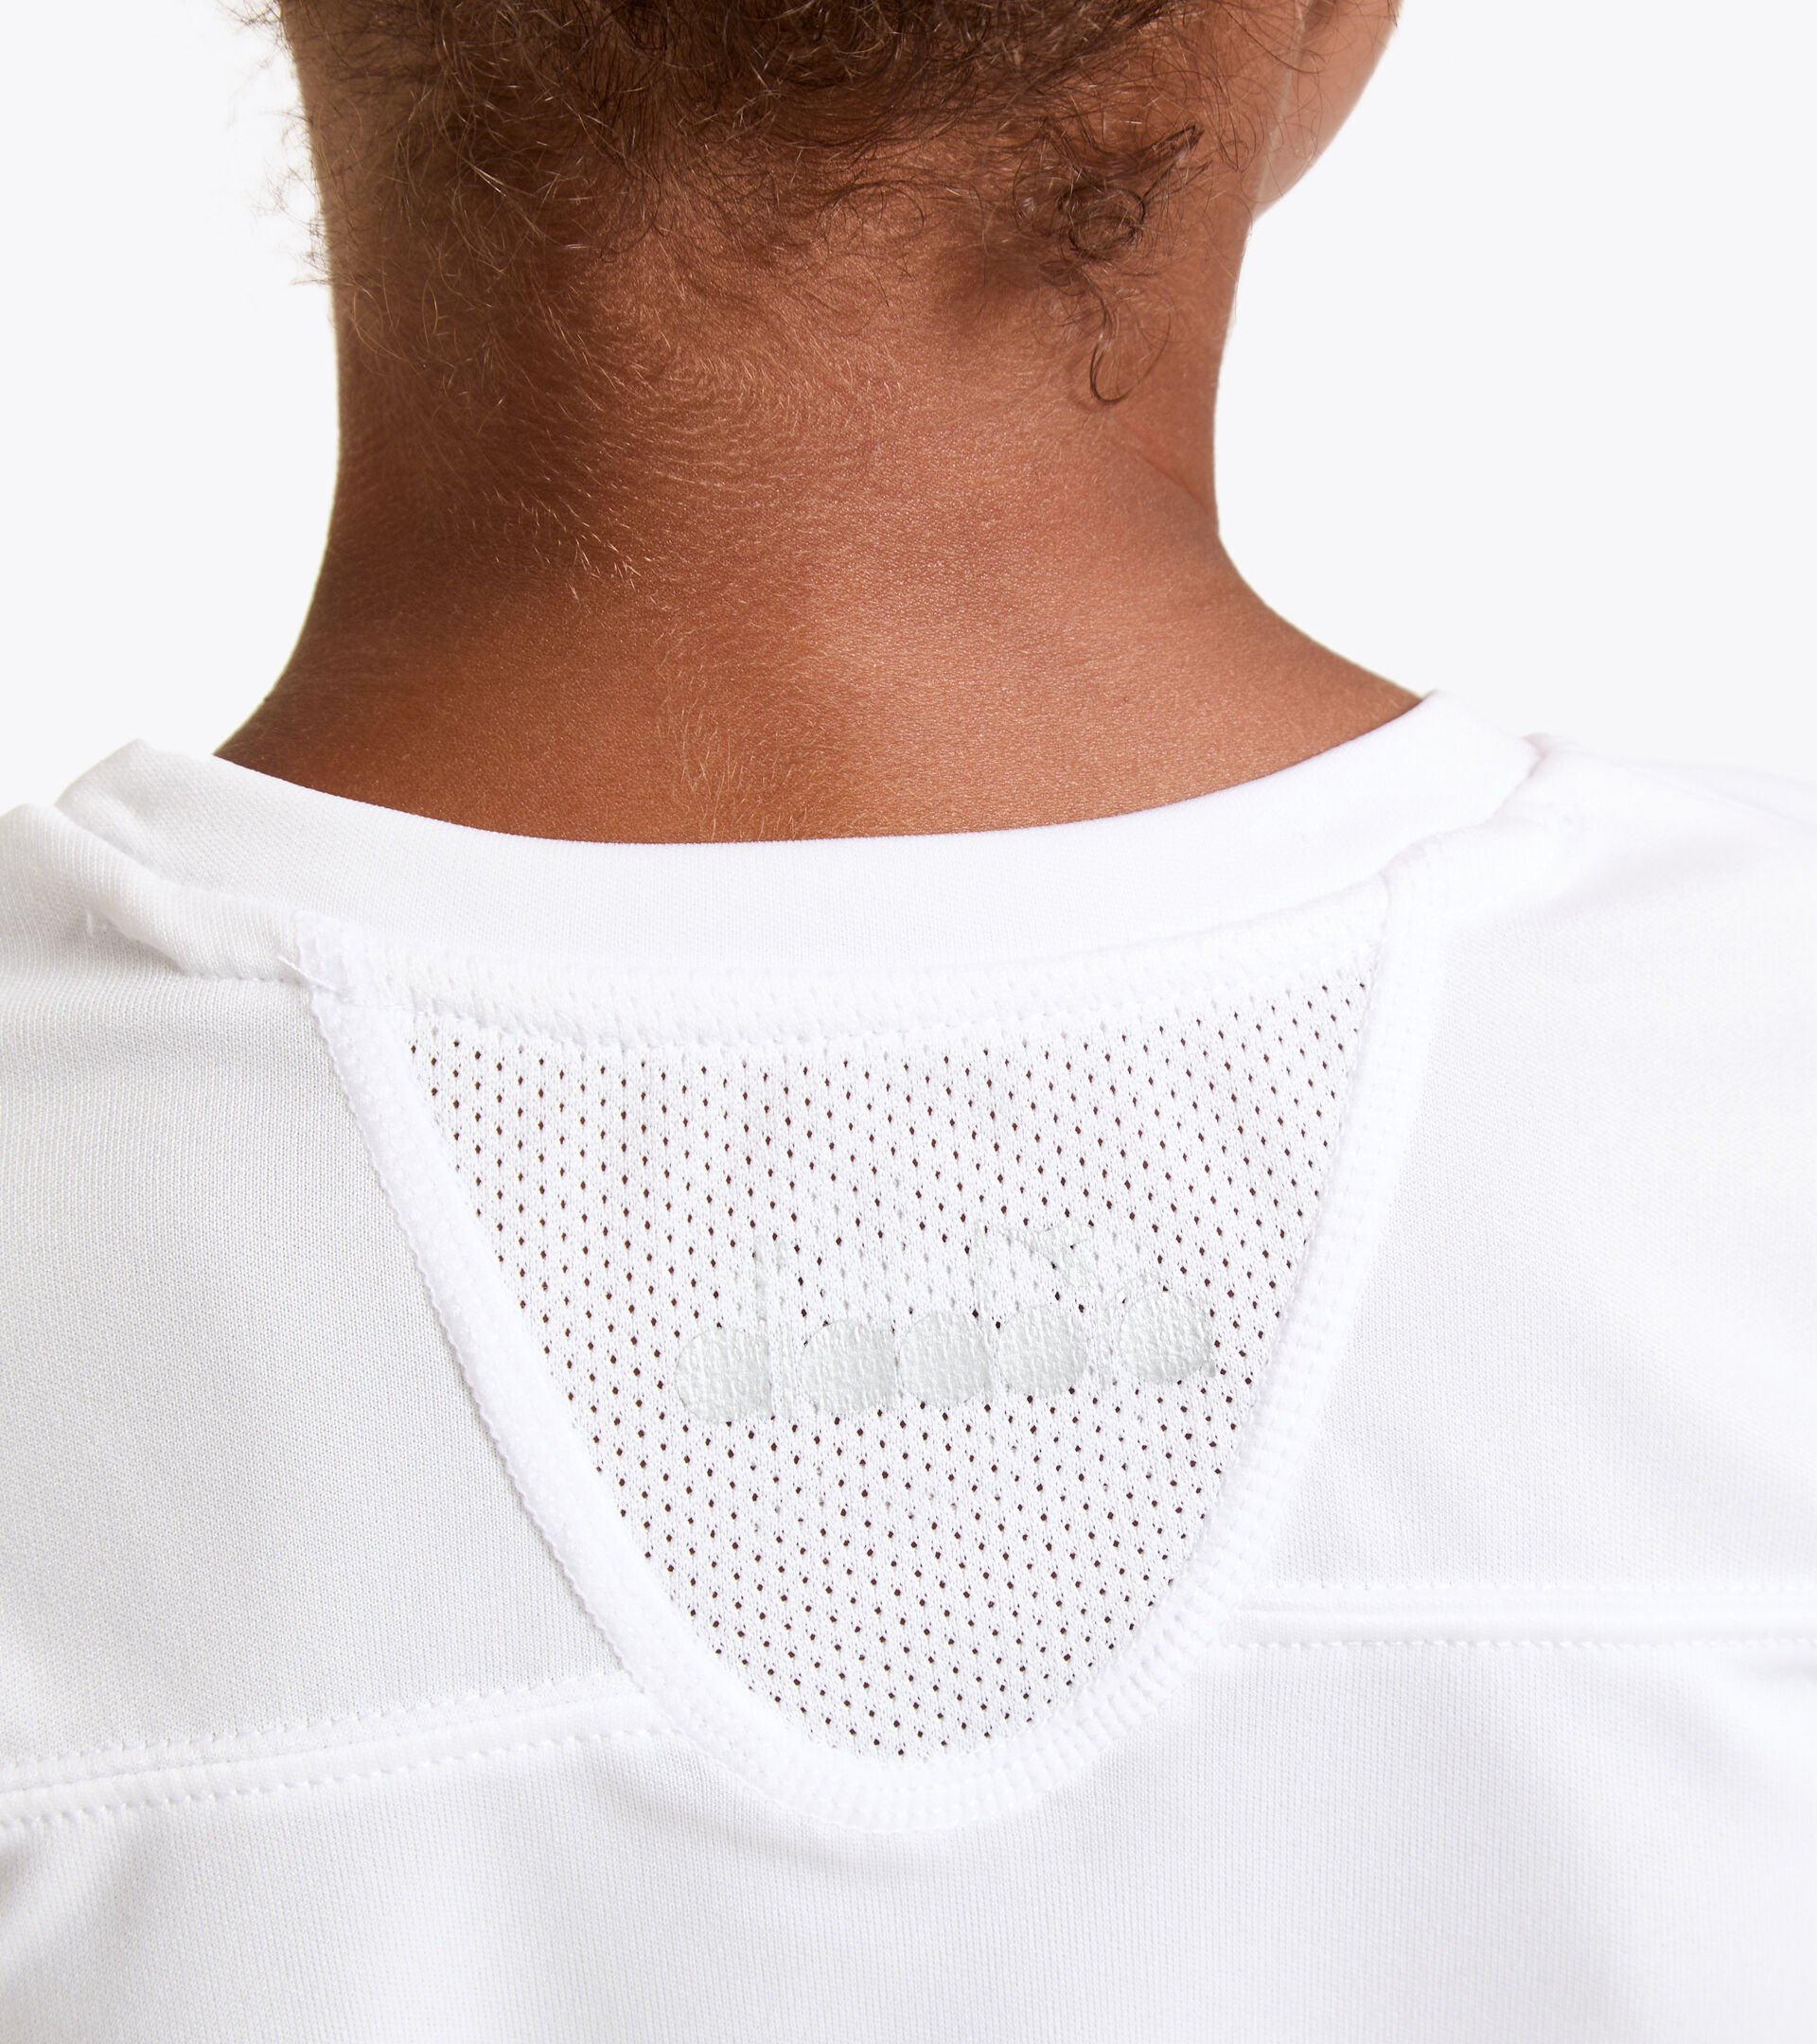 Tennis T-shirt - Junior G. T-SHIRT TEAM OPTICAL WHITE - Diadora